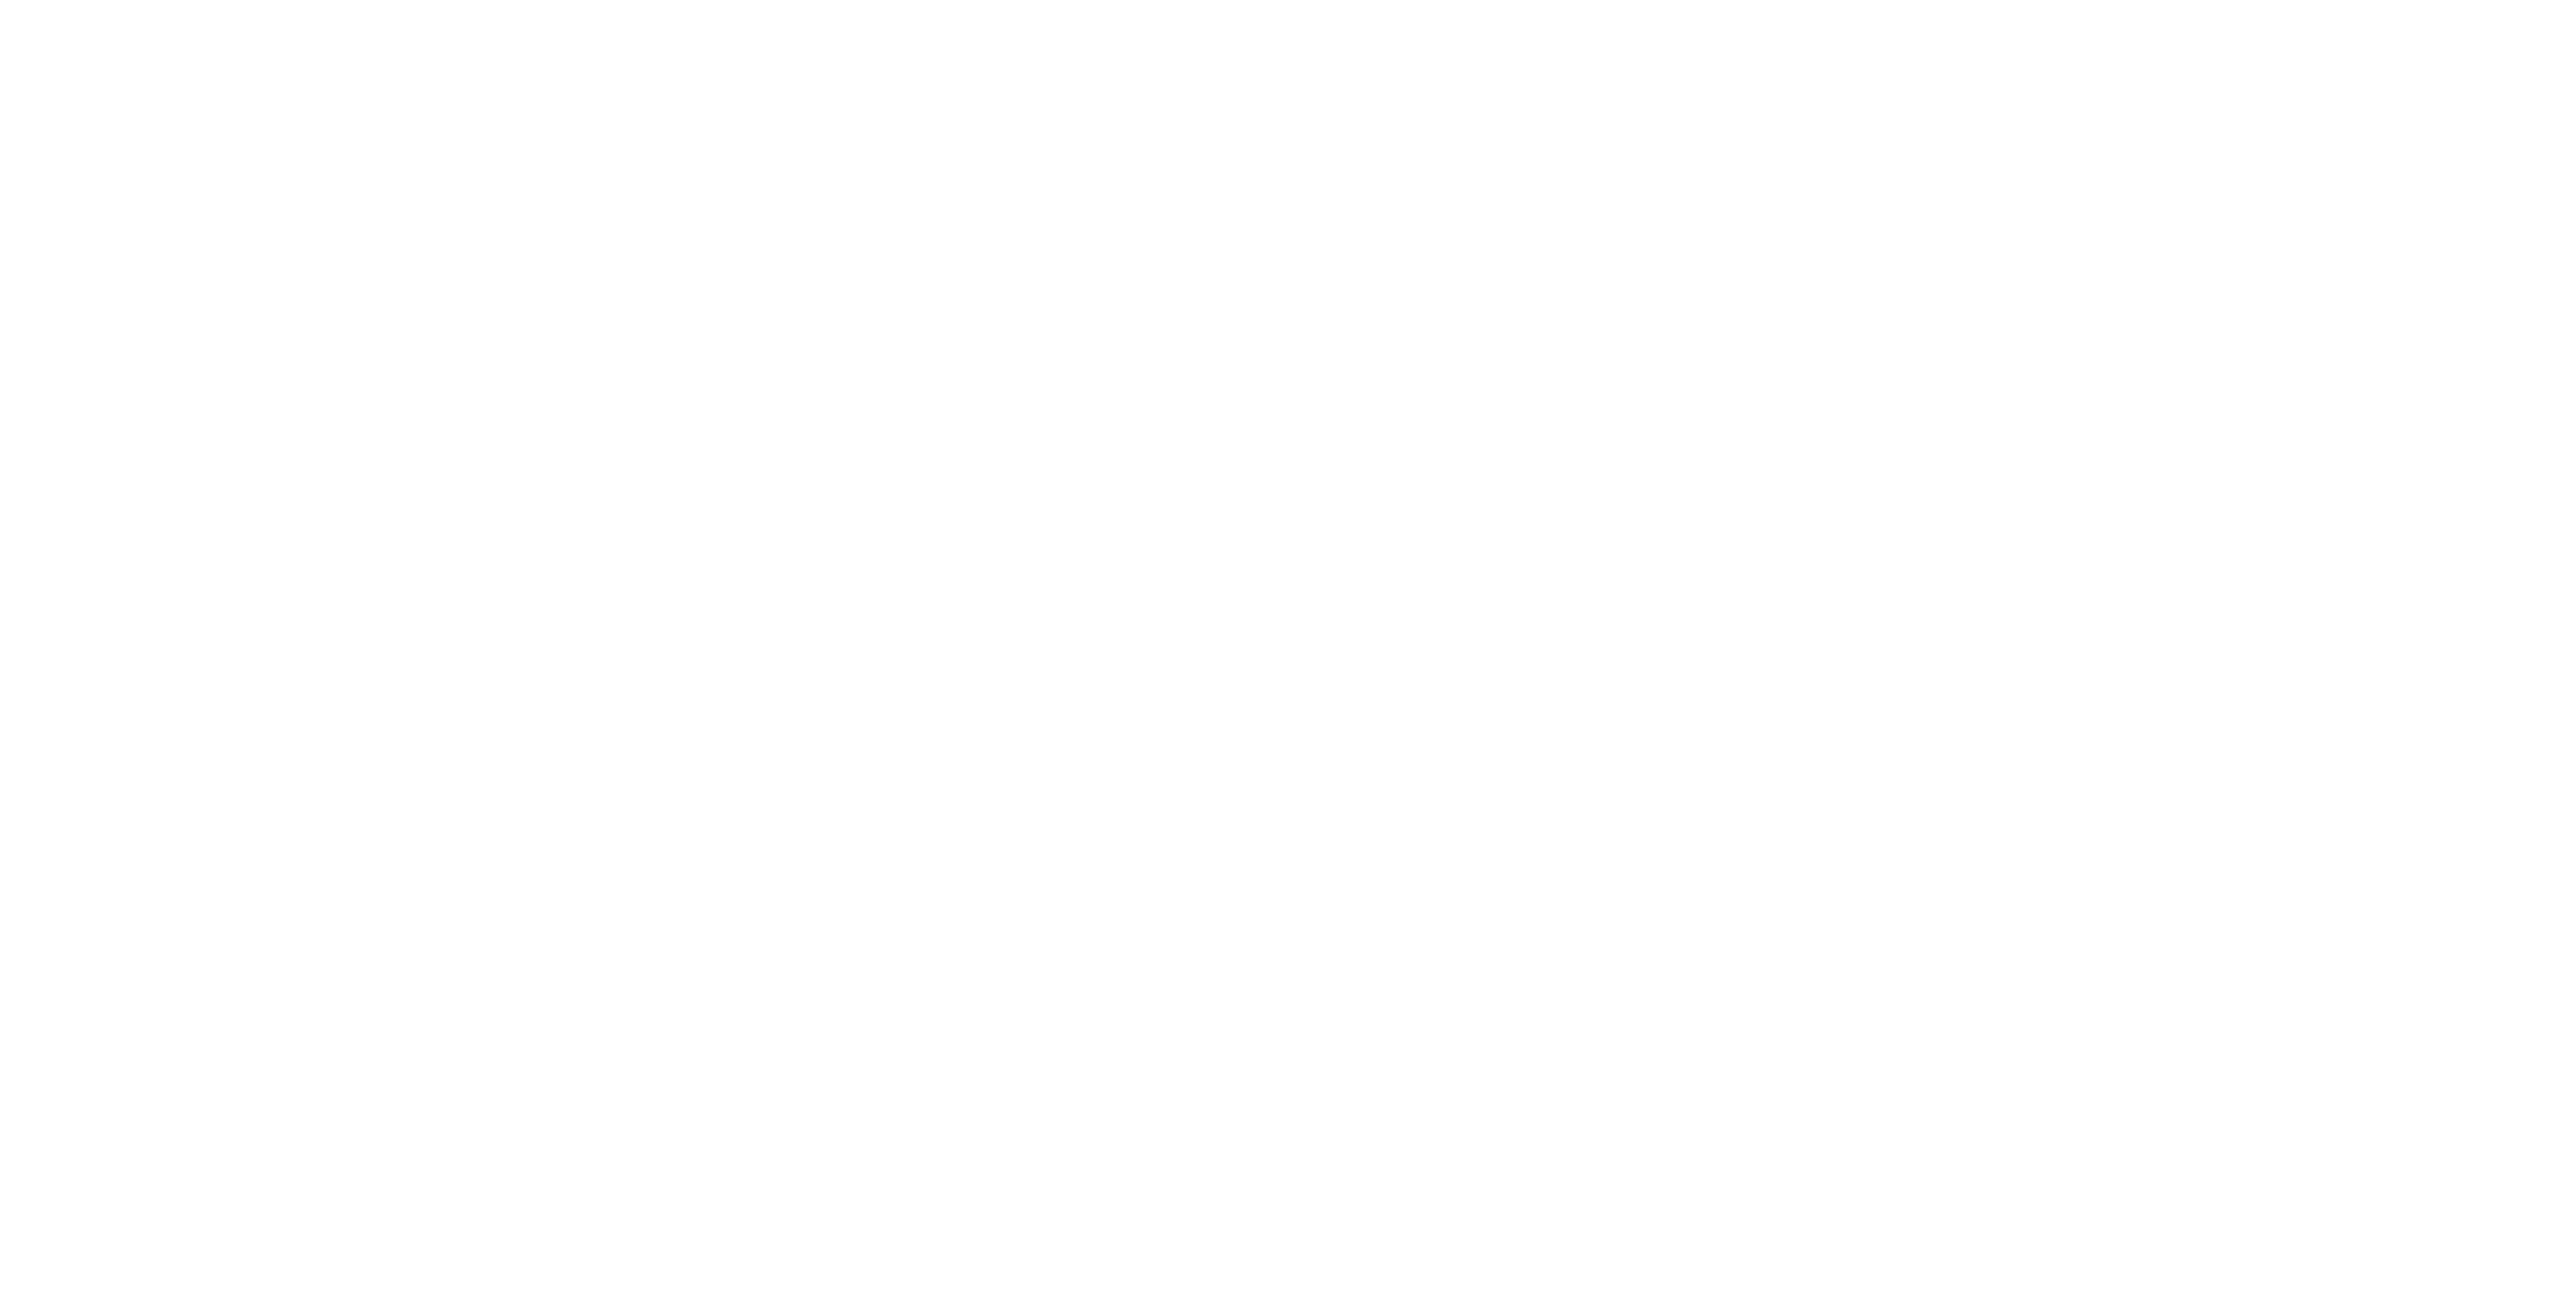 Peak Retina